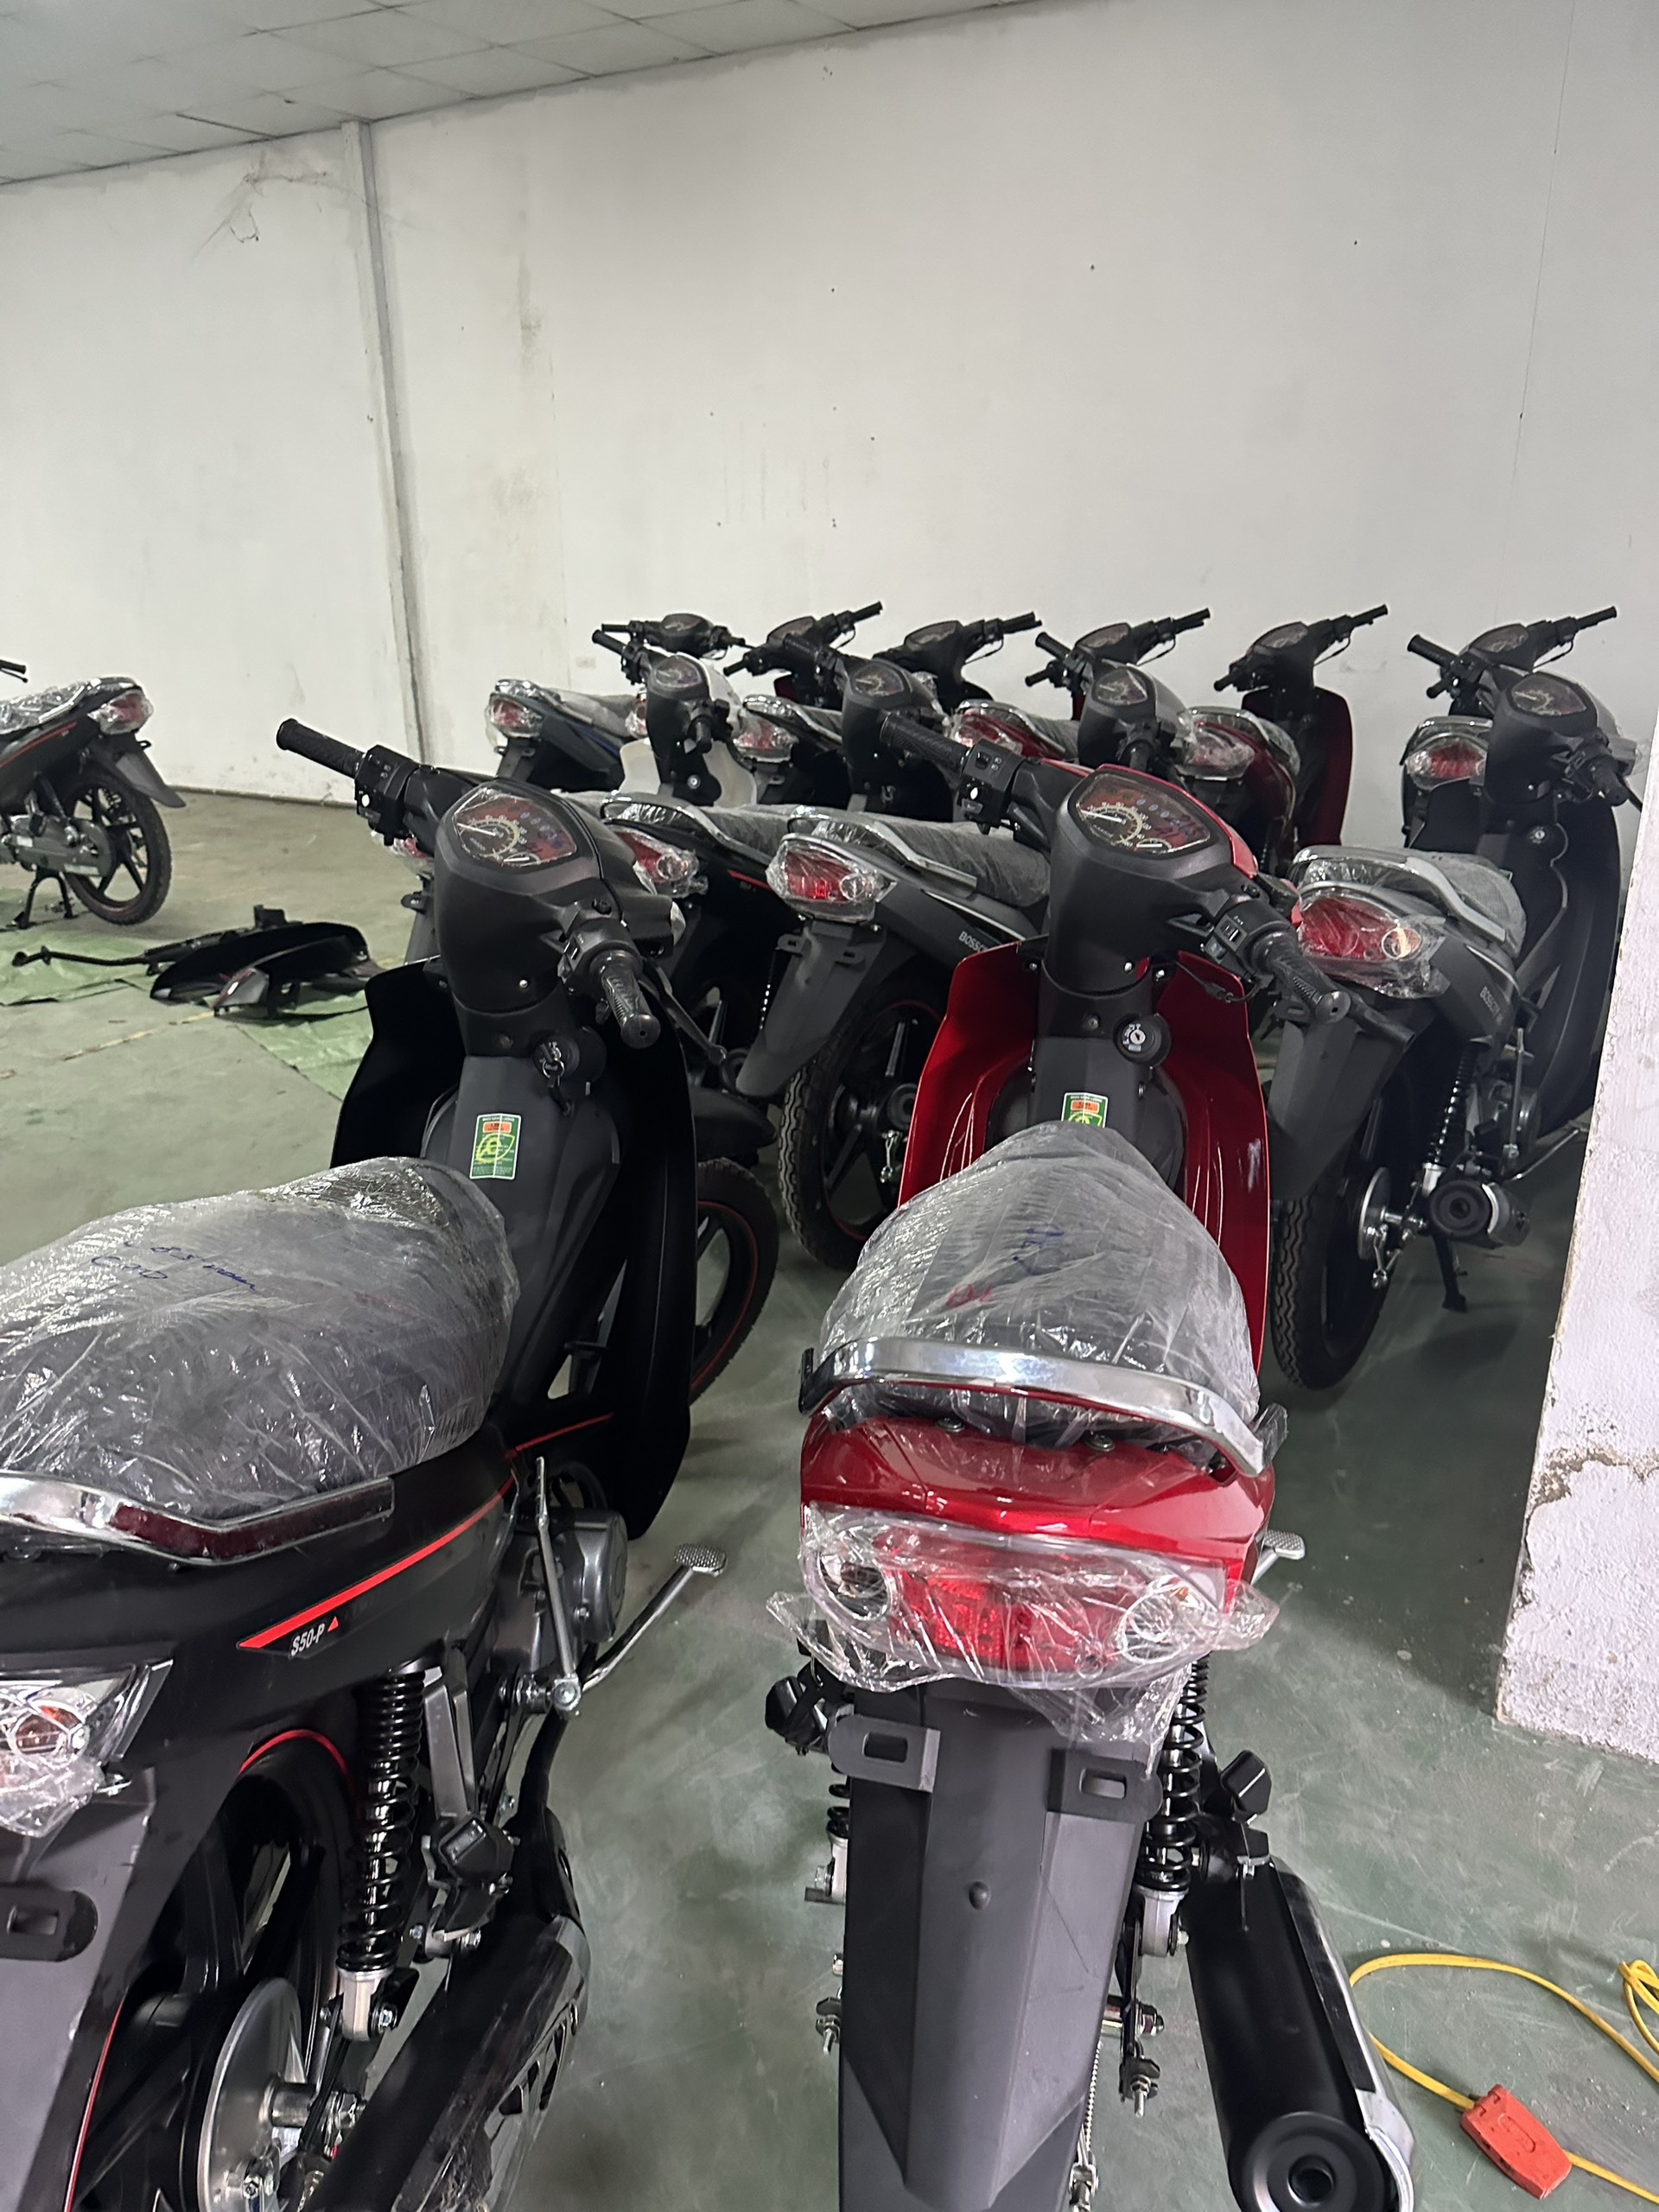 Lai lịch LIFAN - Việt Nam trong vụ khởi tố hình sự vì sản xuất, buôn bán hàng giả xe máy: Sản xuất 200.000 xe máy và 700.000 động cơ xe máy/năm- Ảnh 2.